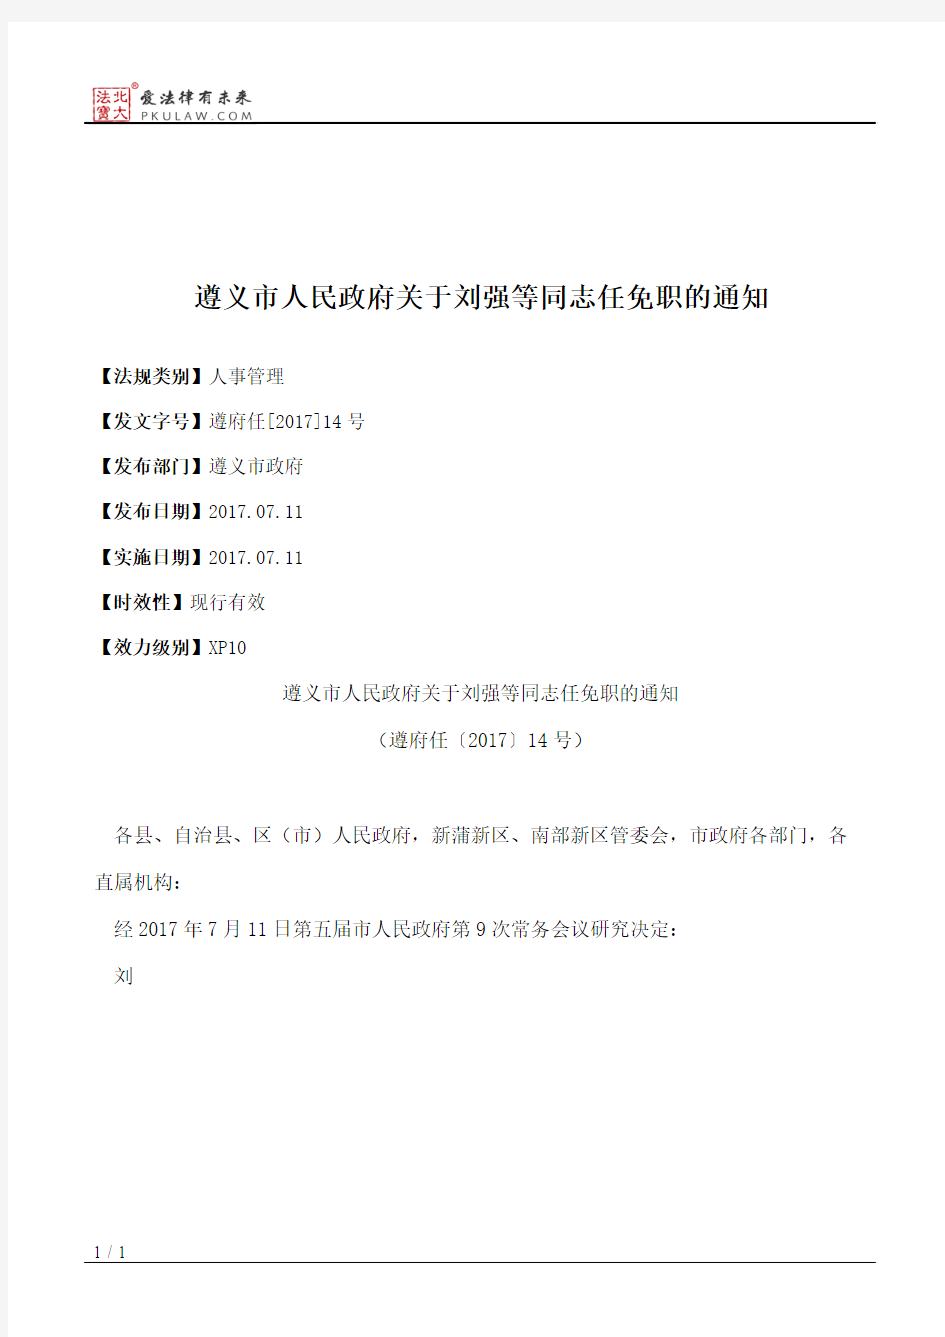 遵义市人民政府关于刘强等同志任免职的通知